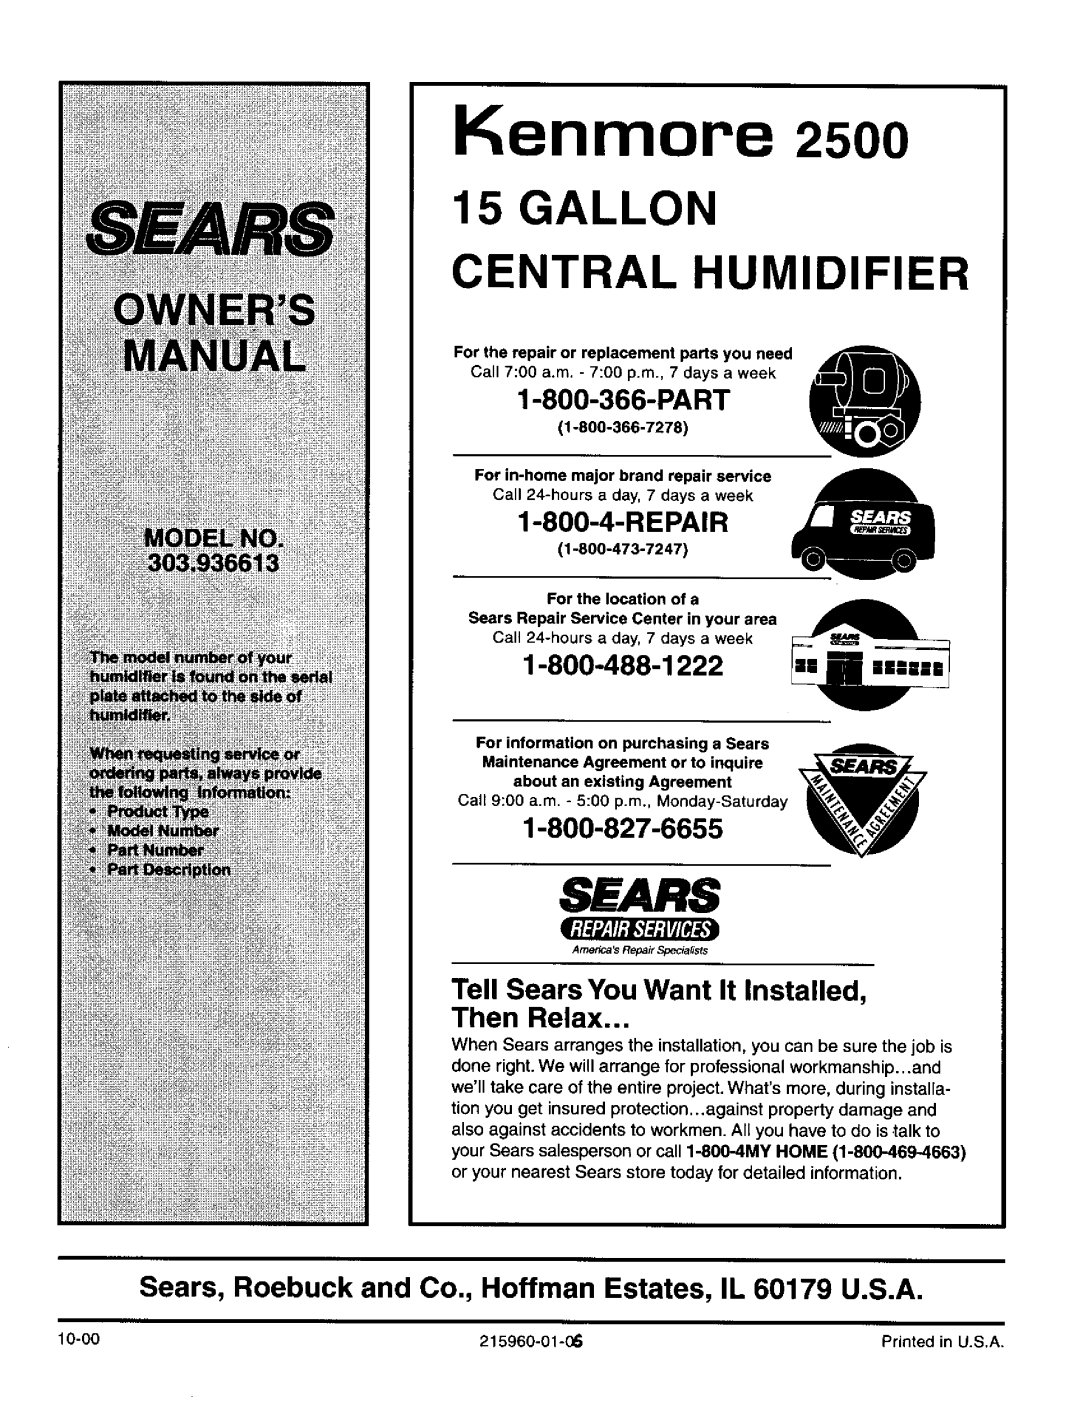 Sears 2500 manual Kenmore 